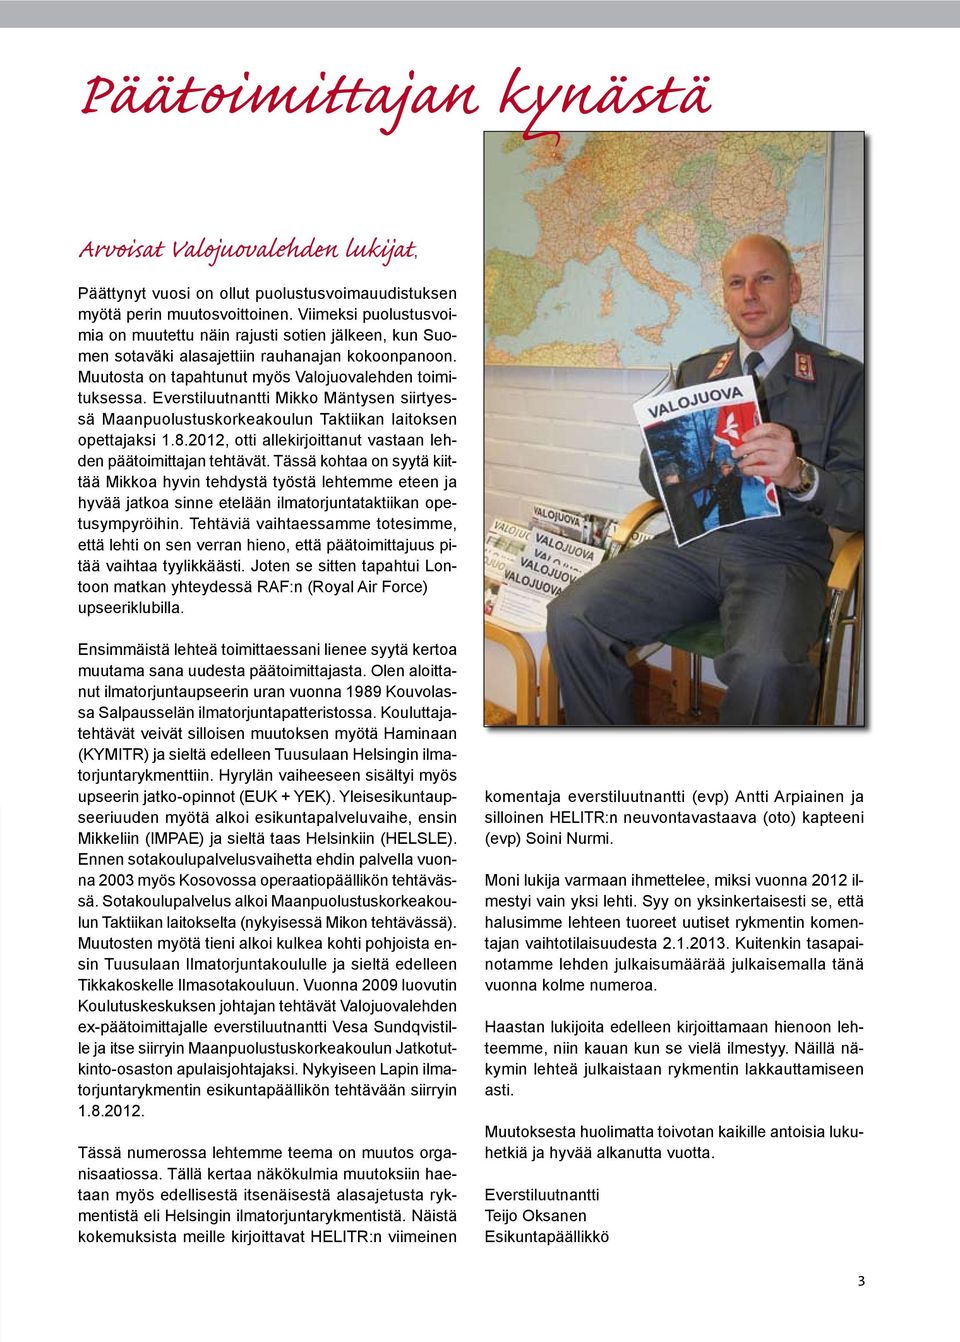 Everstiluutnantti Mikko Mäntysen siirtyessä Maanpuolustuskorkeakoulun Taktiikan laitoksen opettajaksi 1.8.2012, otti allekirjoittanut vastaan lehden päätoimittajan tehtävät.